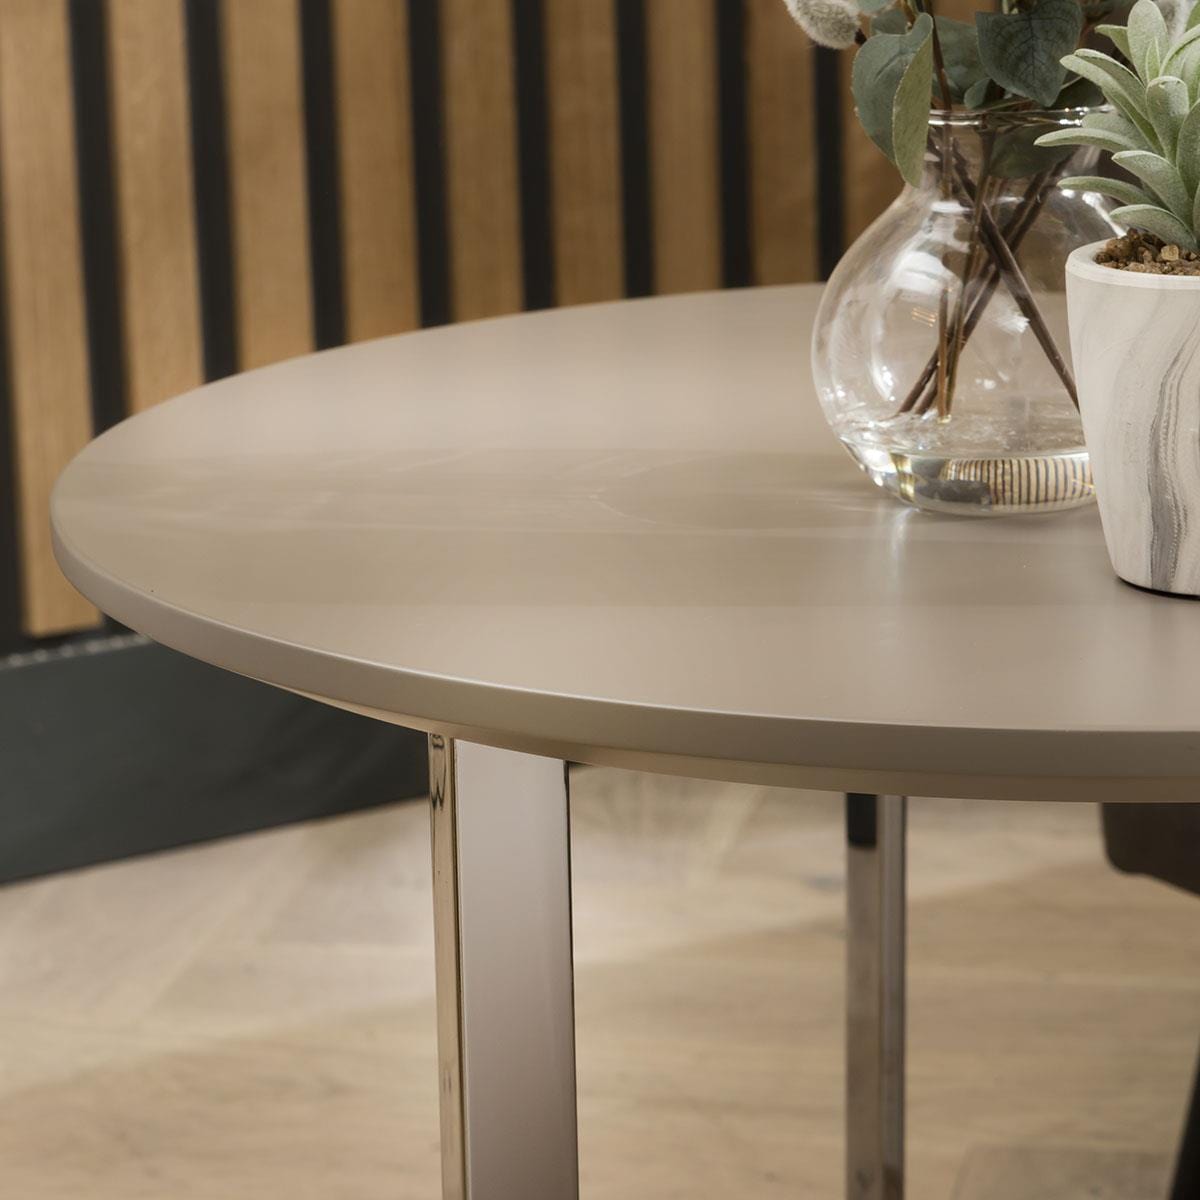 Quatropi Quatropi Side Table 60cm - Modern Round Lamp Table - Premium Taupe Finish